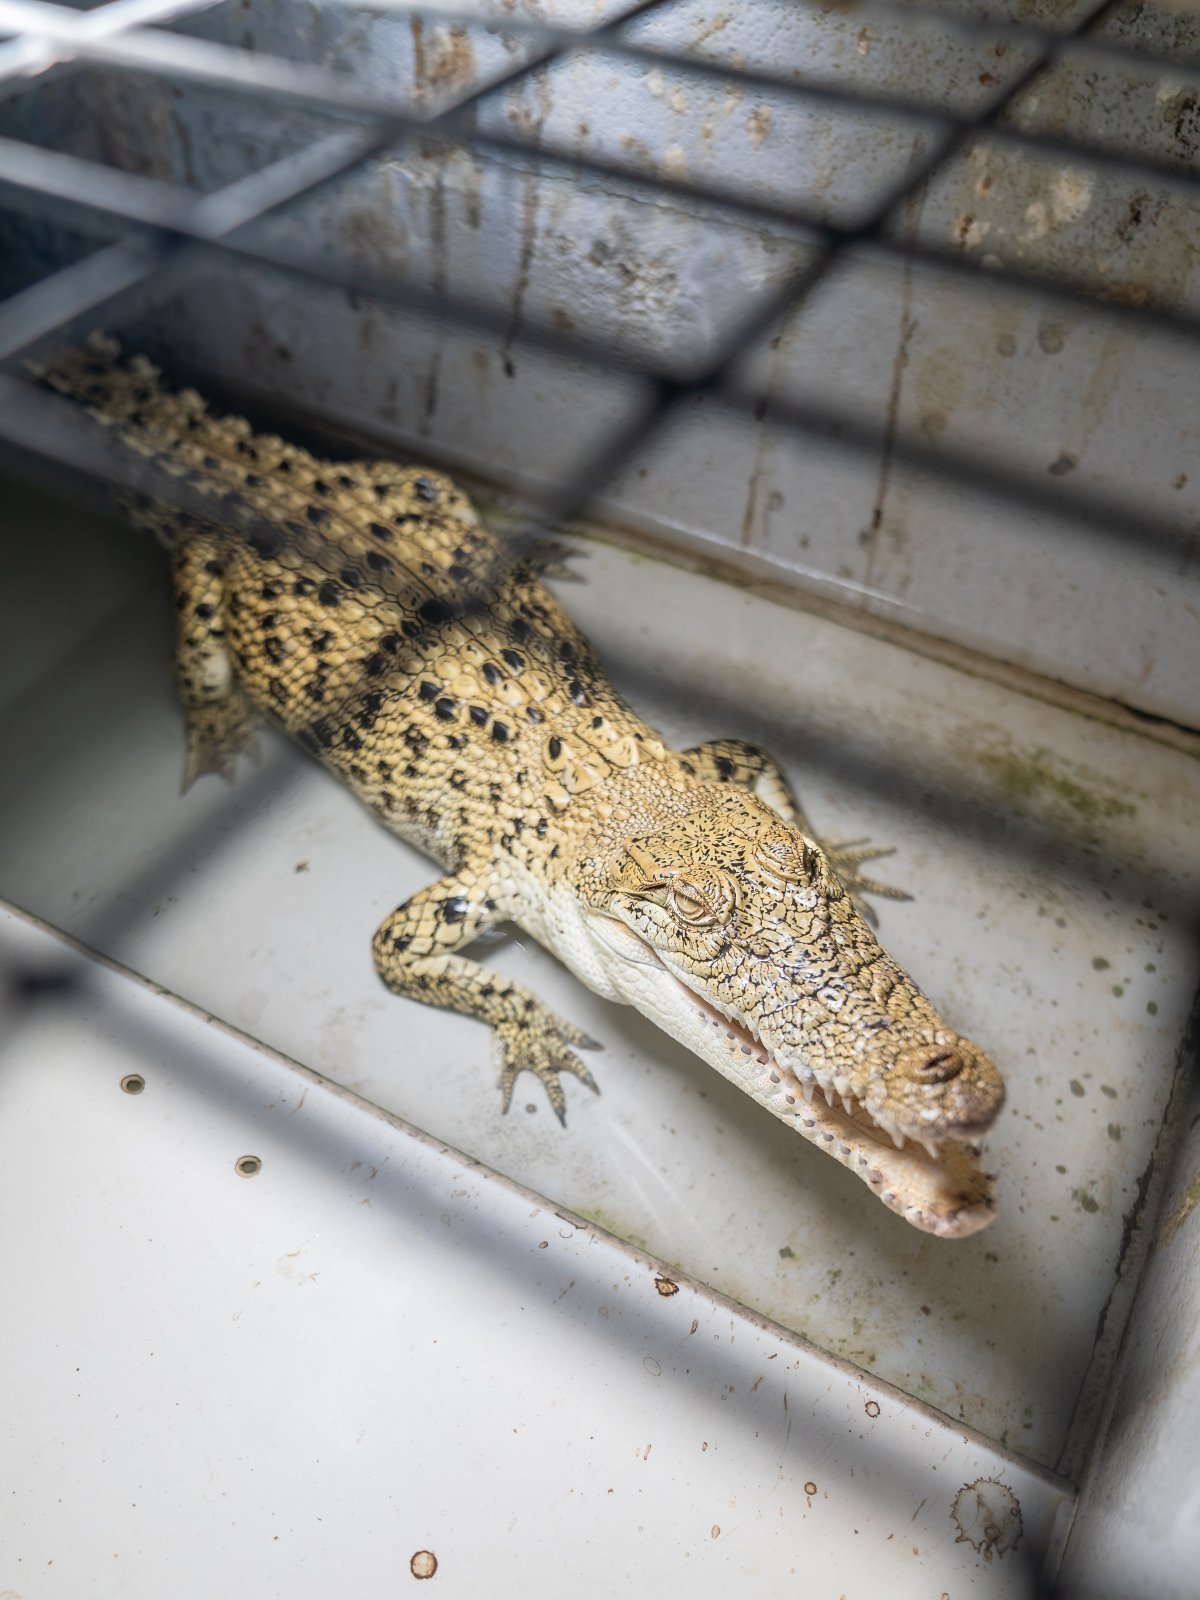 Crocodile farming — Defend The Wild